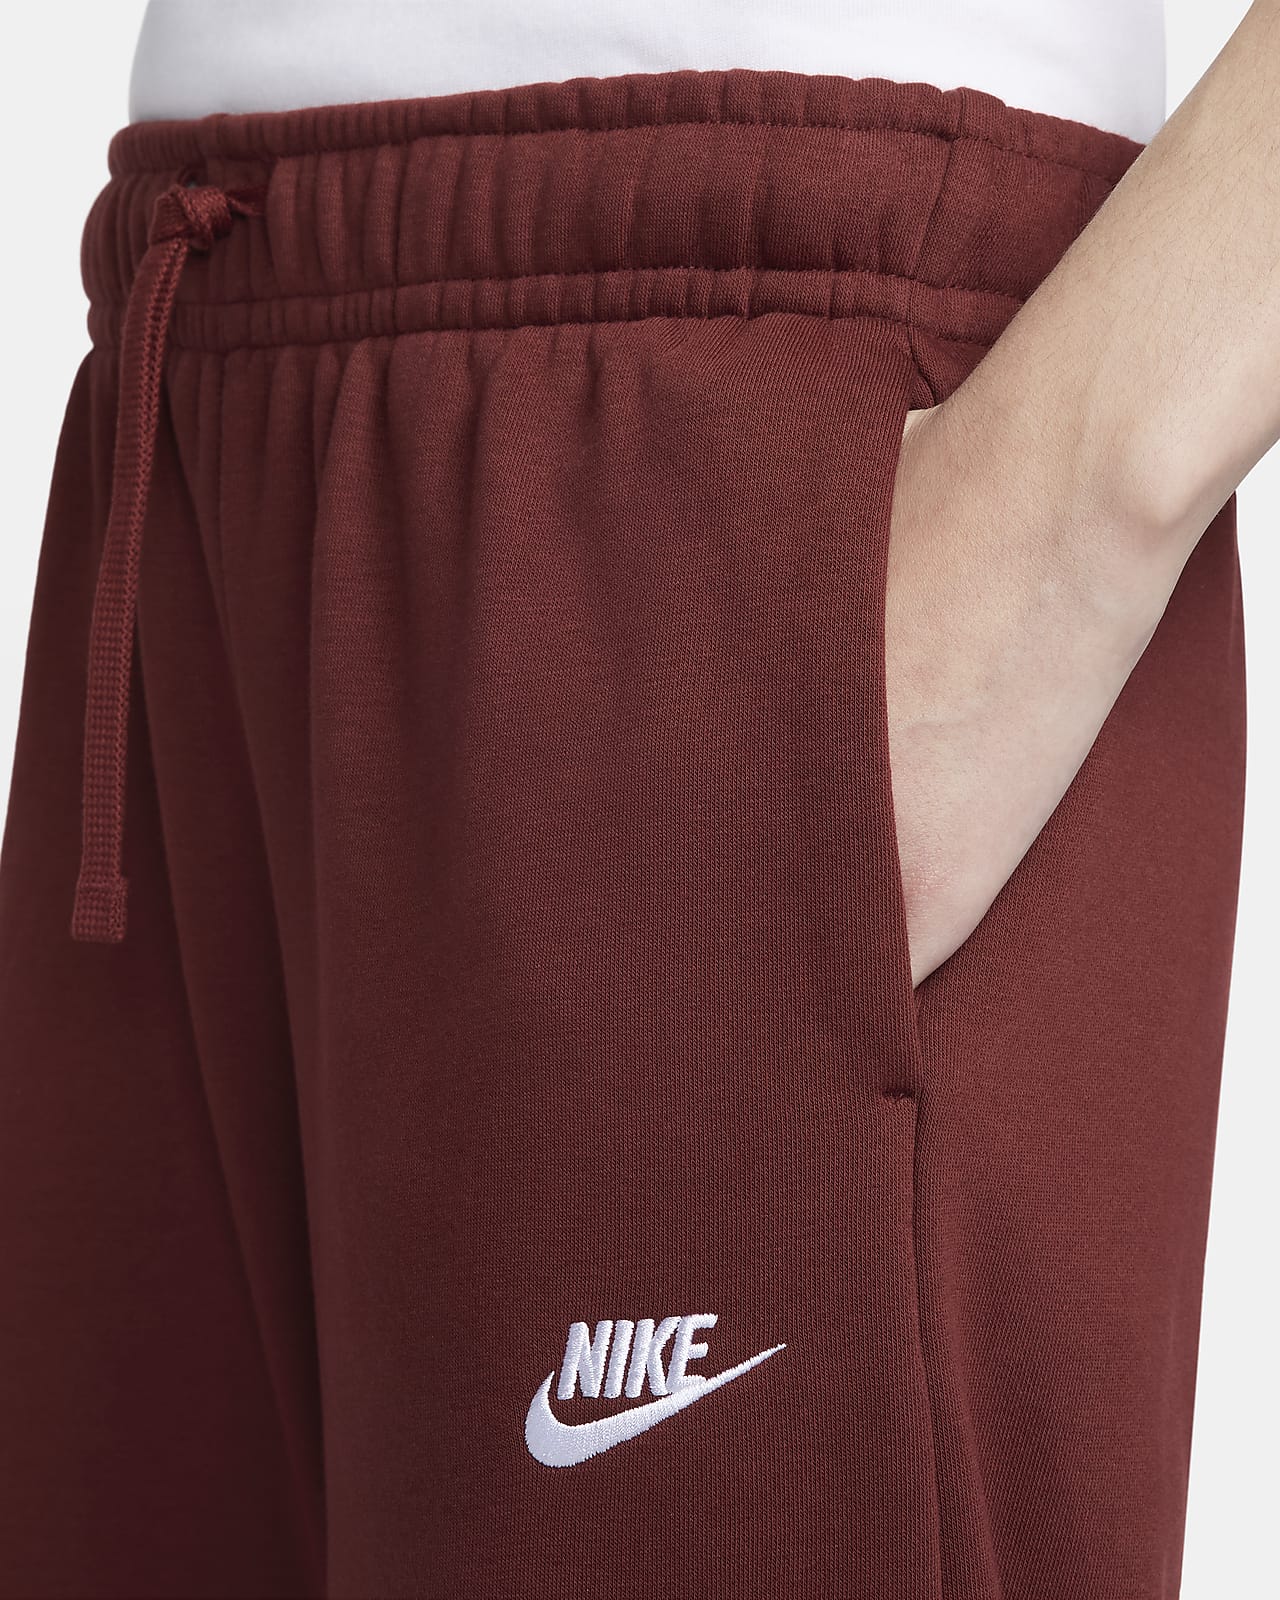 Nike Lounge essential fleece pants in black marl